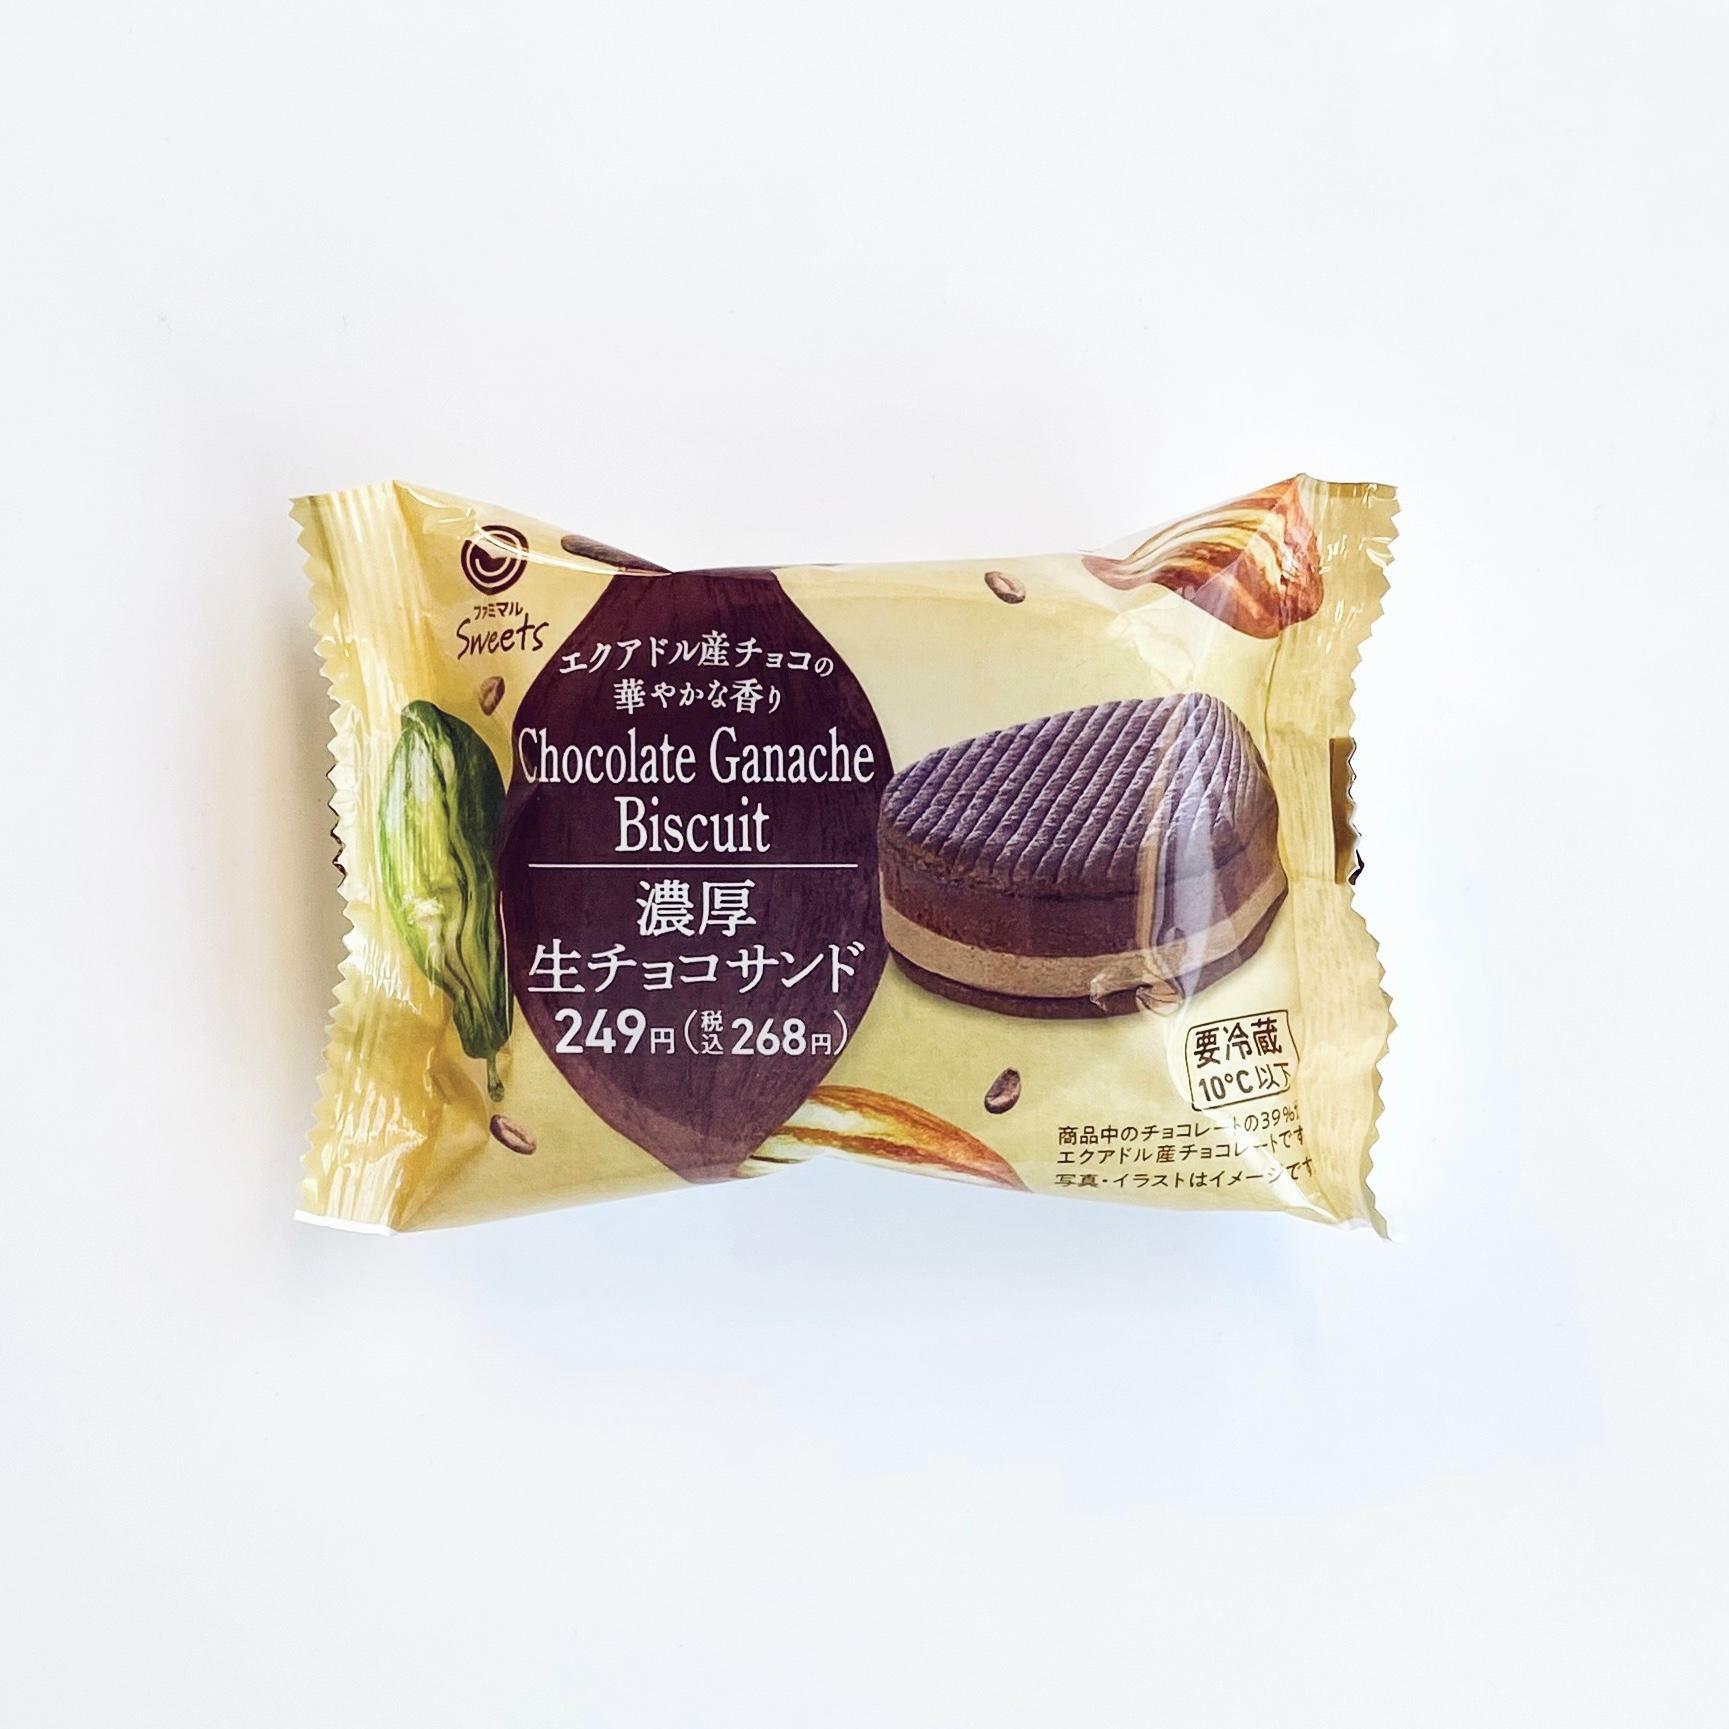 「濃厚生チョコサンド」¥268